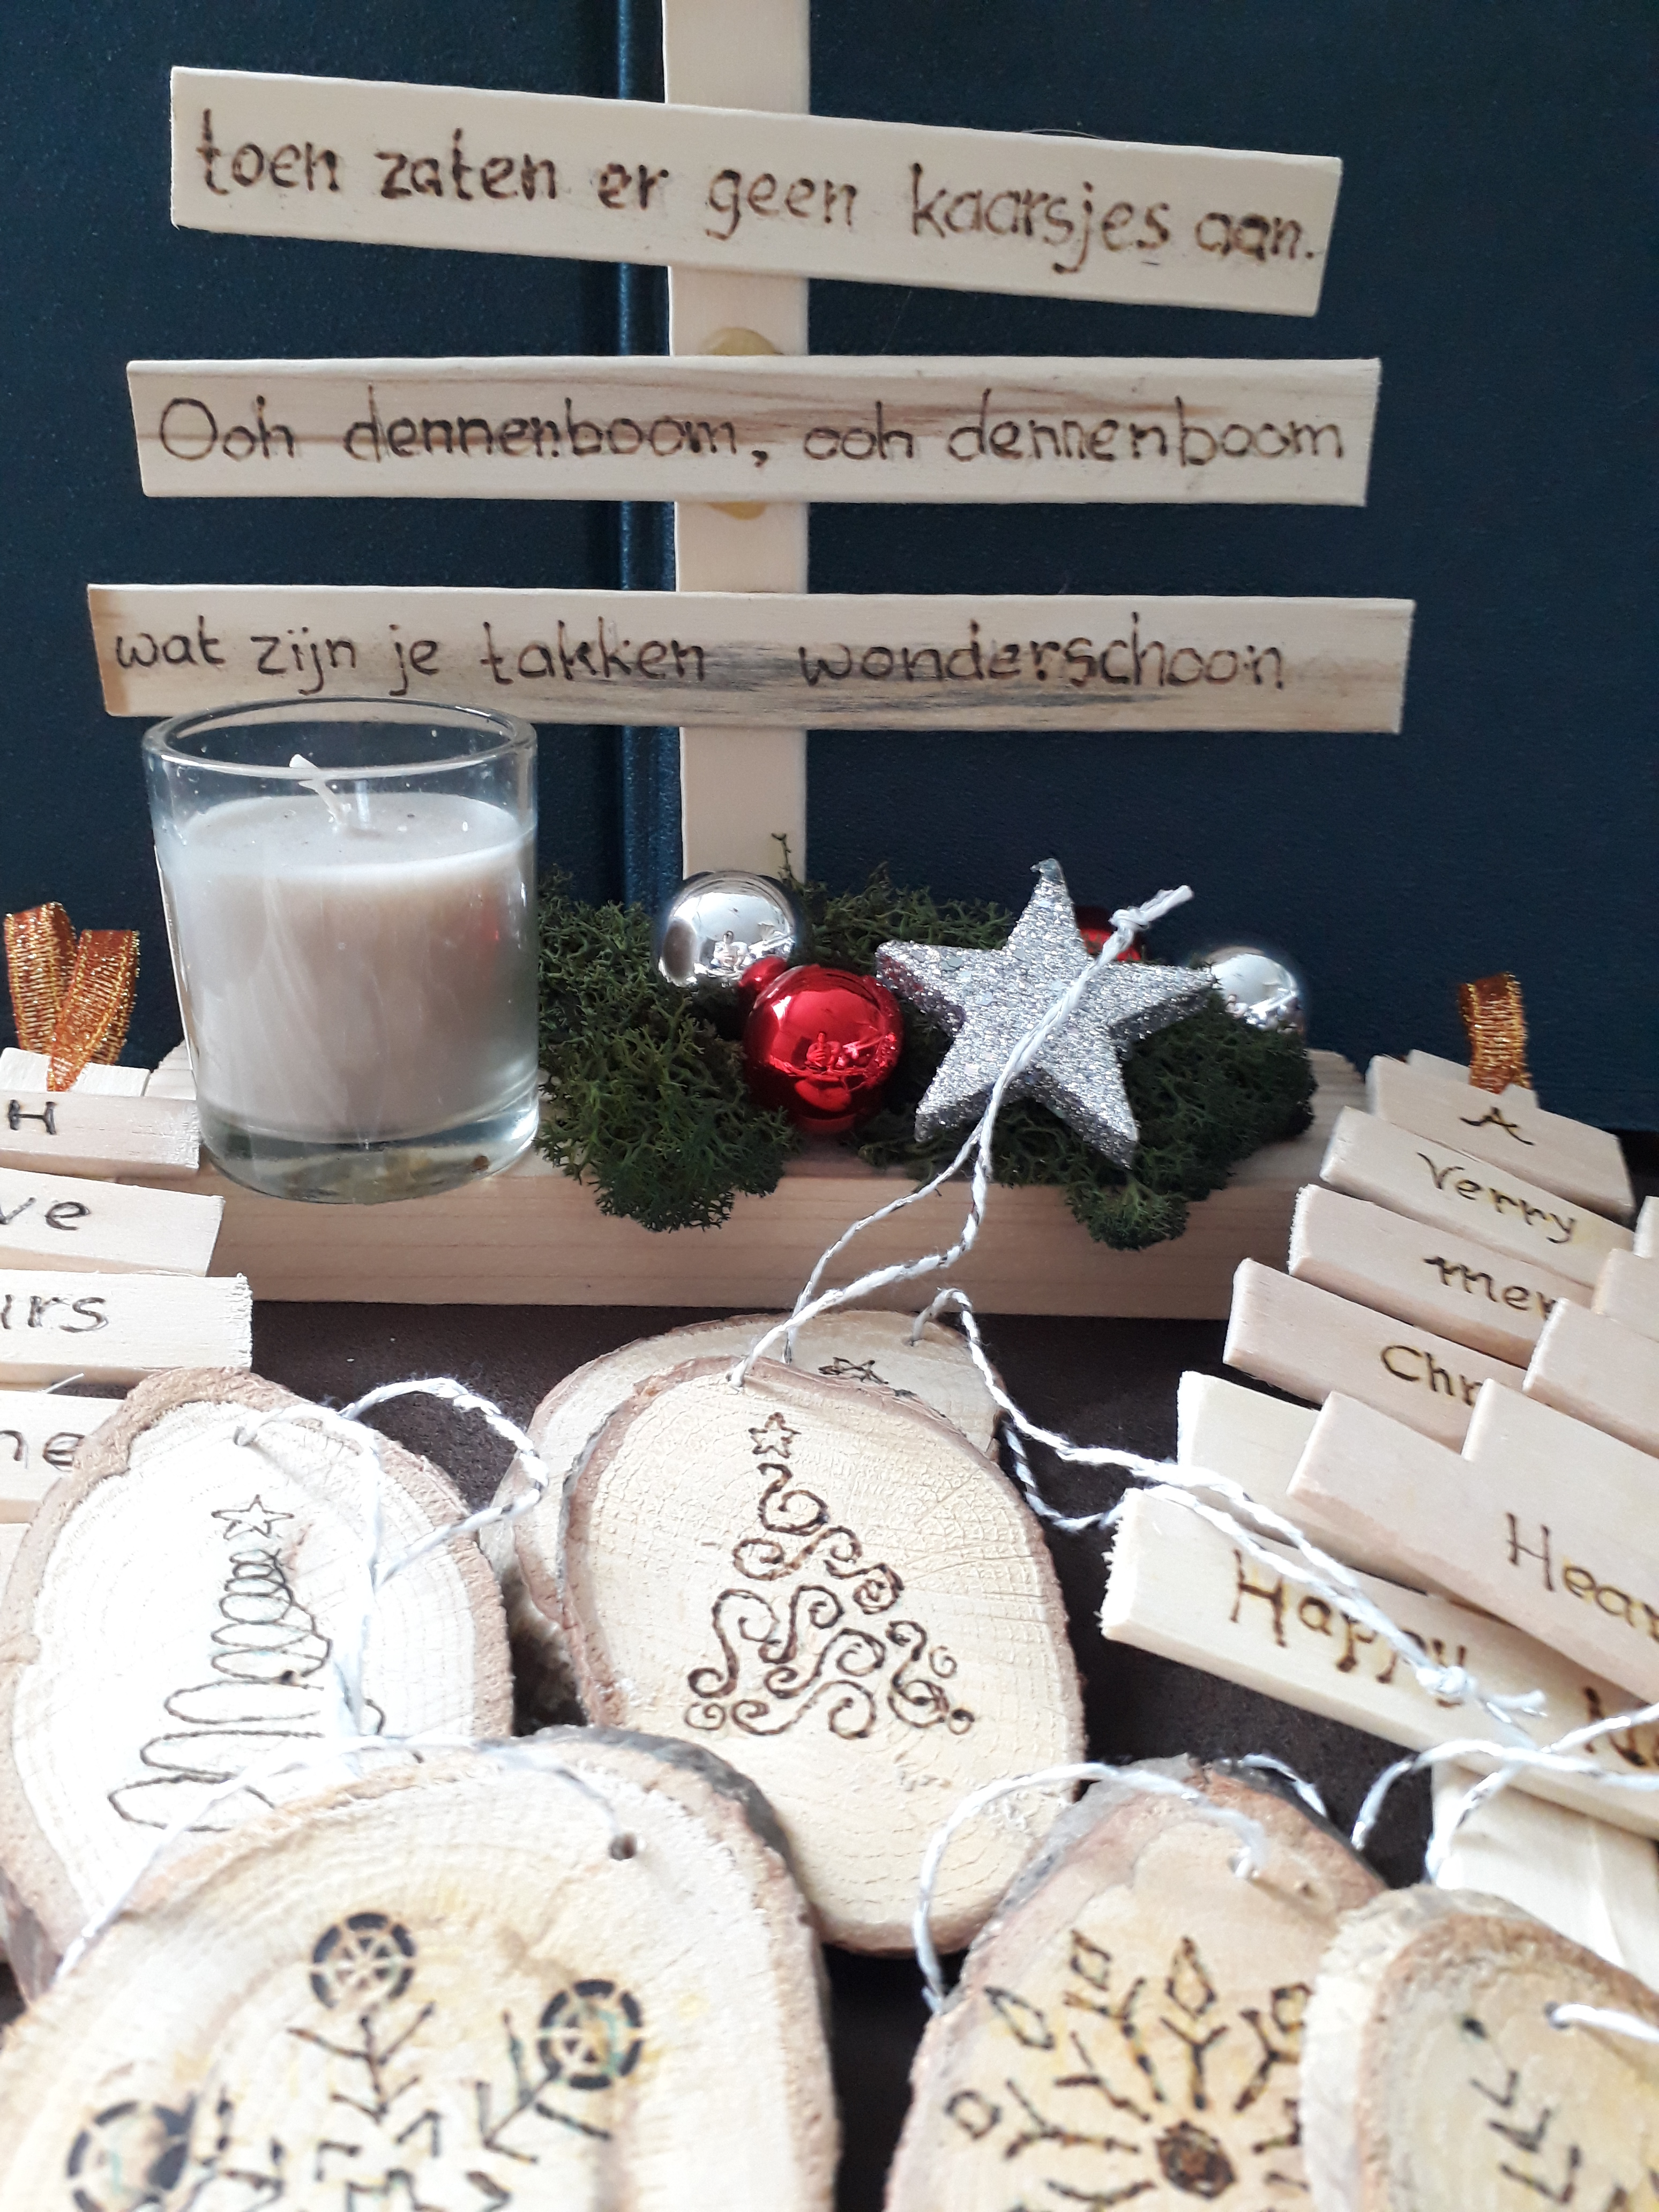 Gestaag caravan taart Houten kerstdecoratie, zelf houten decoraties maken met hout brandpen